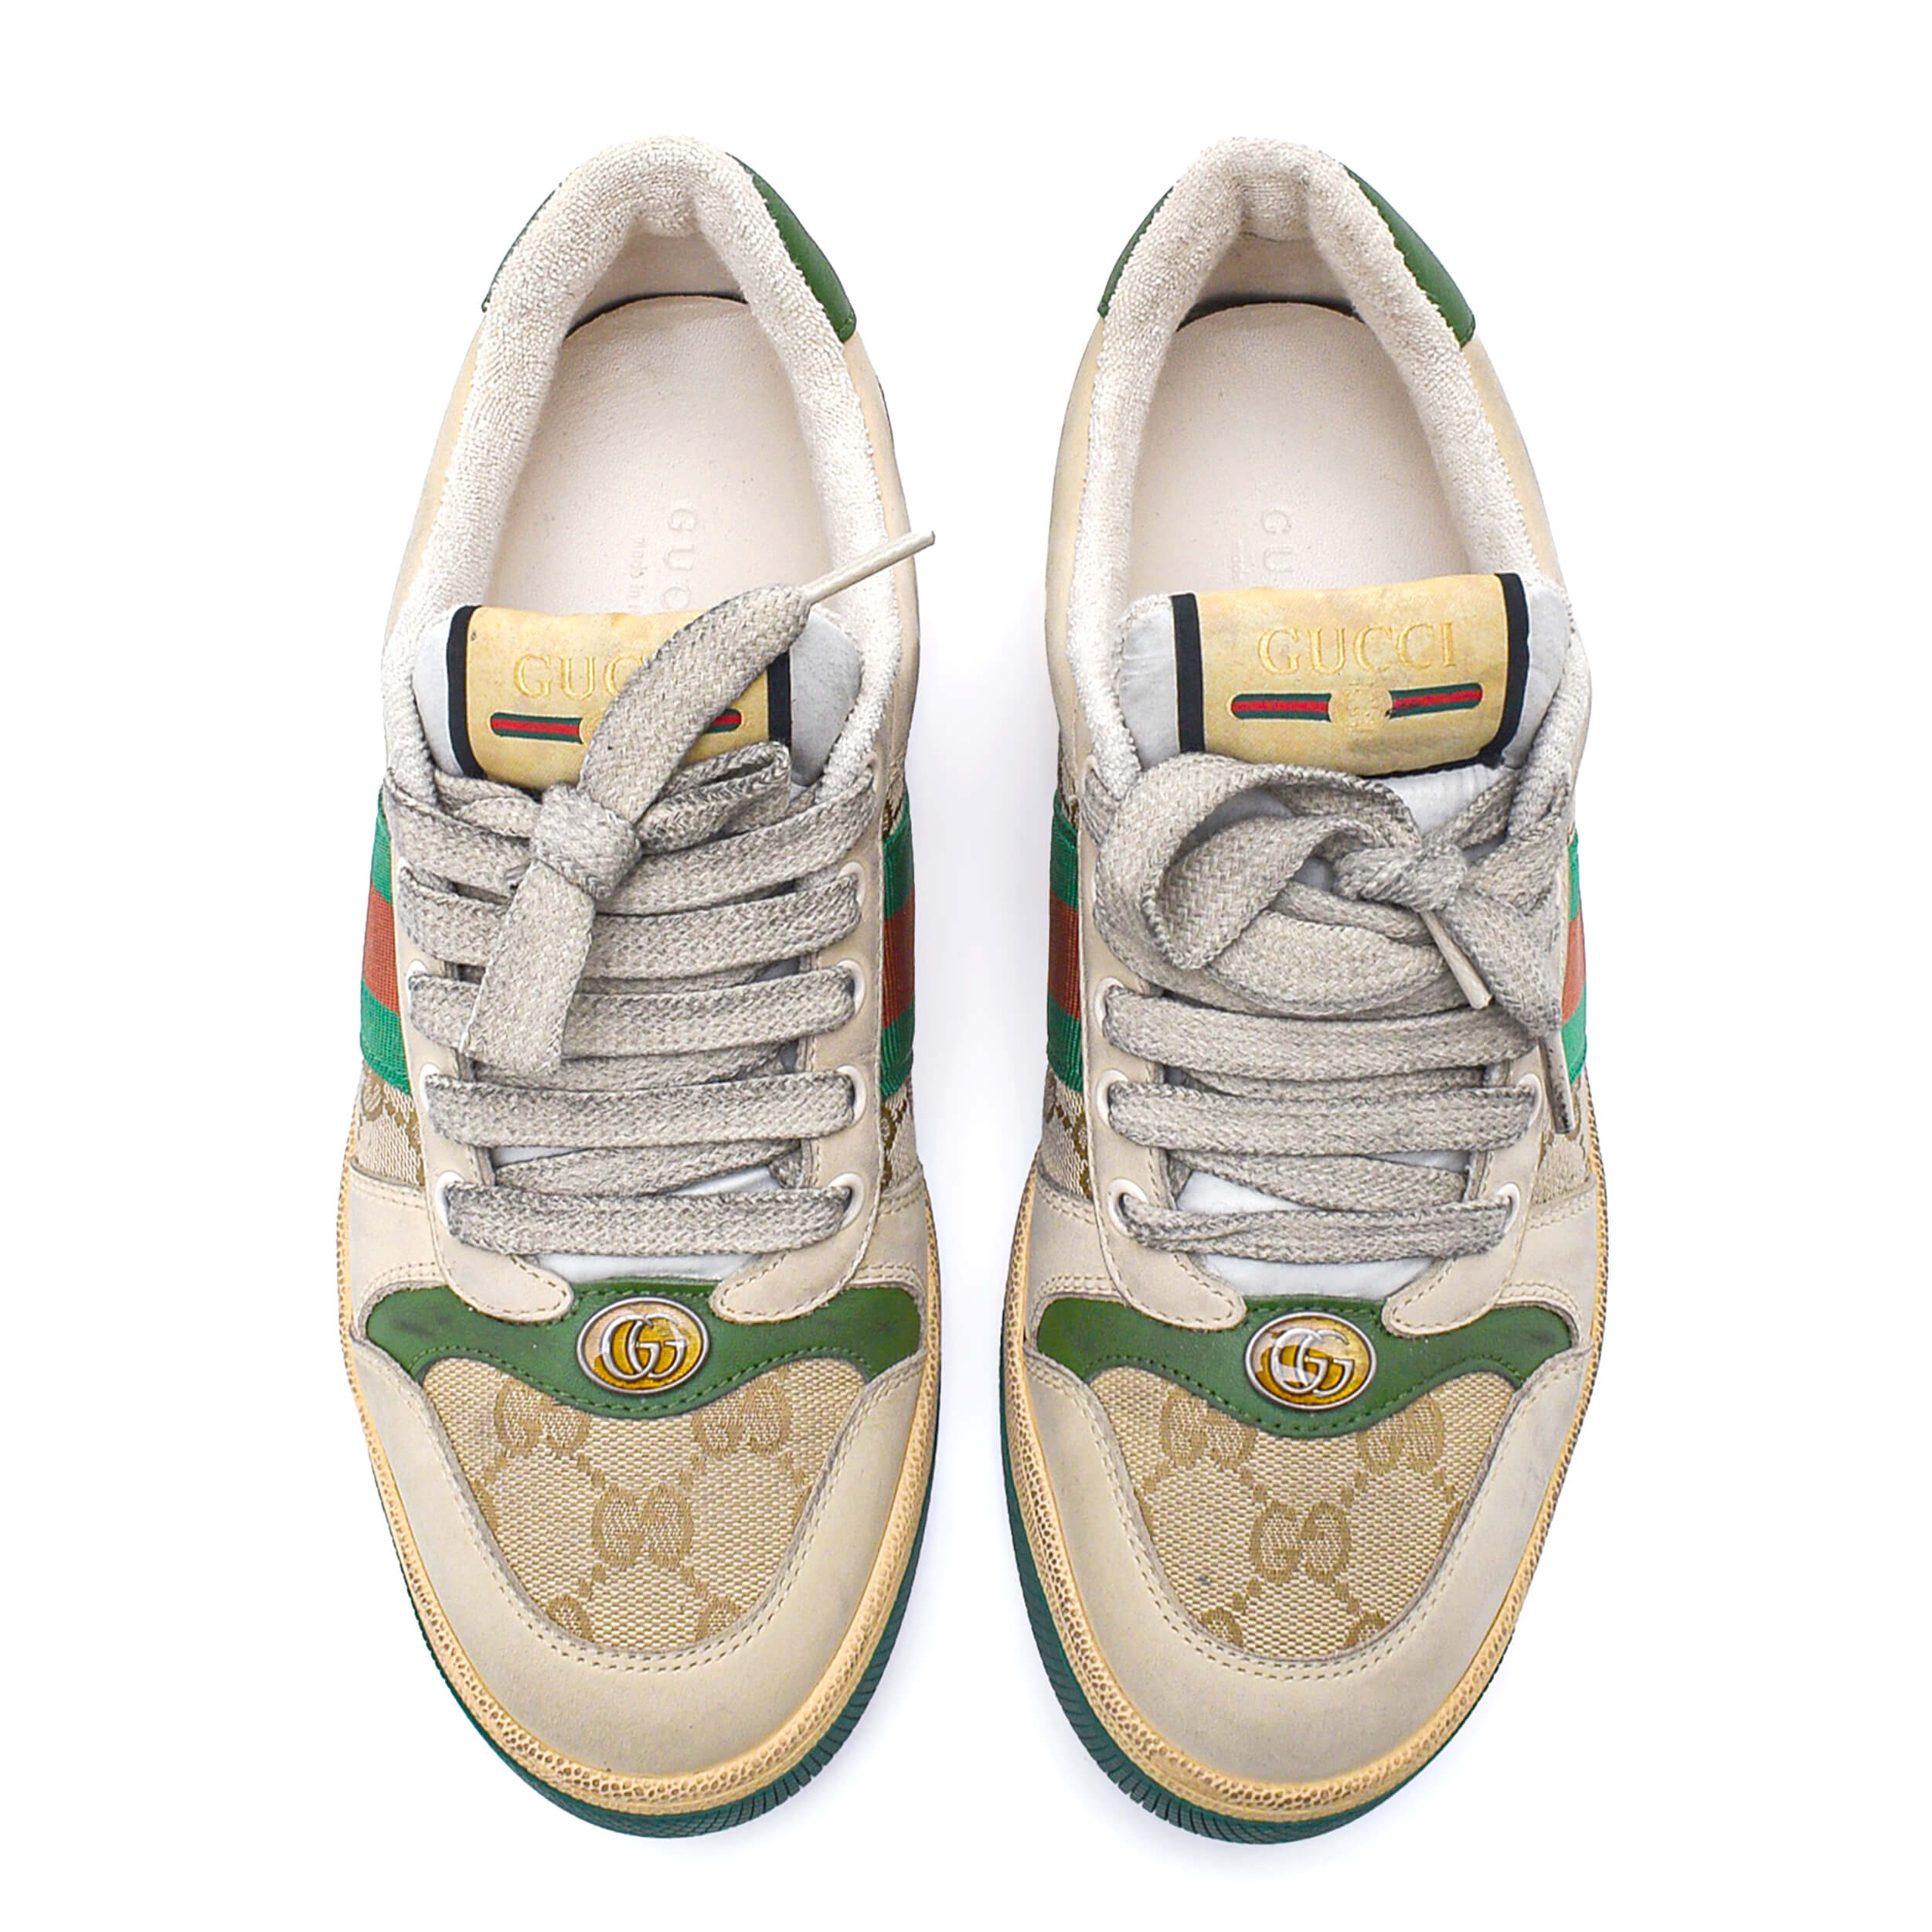 Gucci - GG Supreme Canvas Sneakers